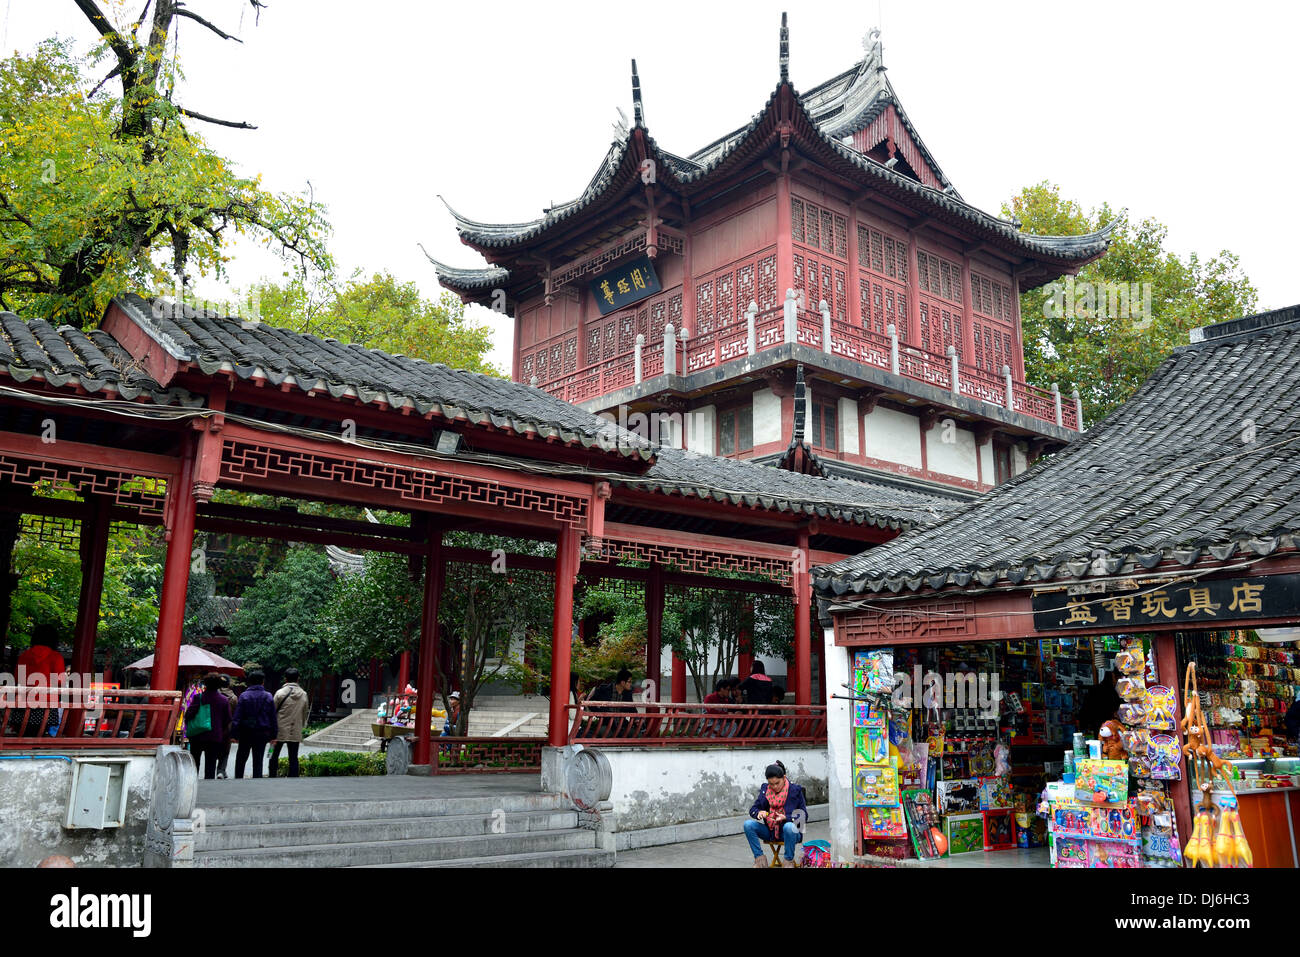 Negozi di souvenir lungo la storica strada presso il Tempio di Confucio. Nanjing, provincia dello Jiangsu, Cina. Foto Stock